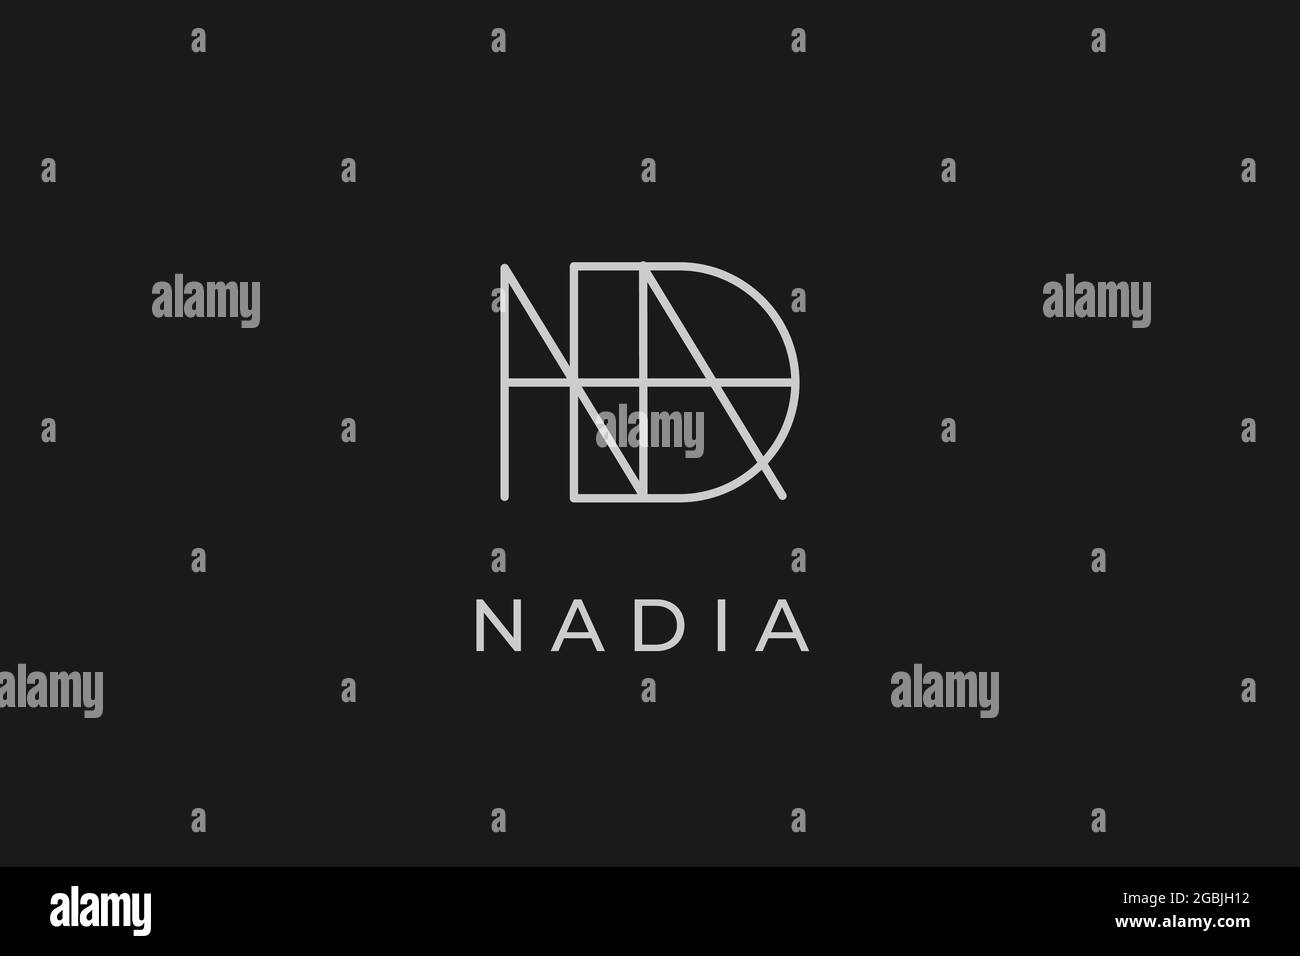 logo name Nadia, usable logo design for private logo, business name card web icon, social media icon Stock Vector